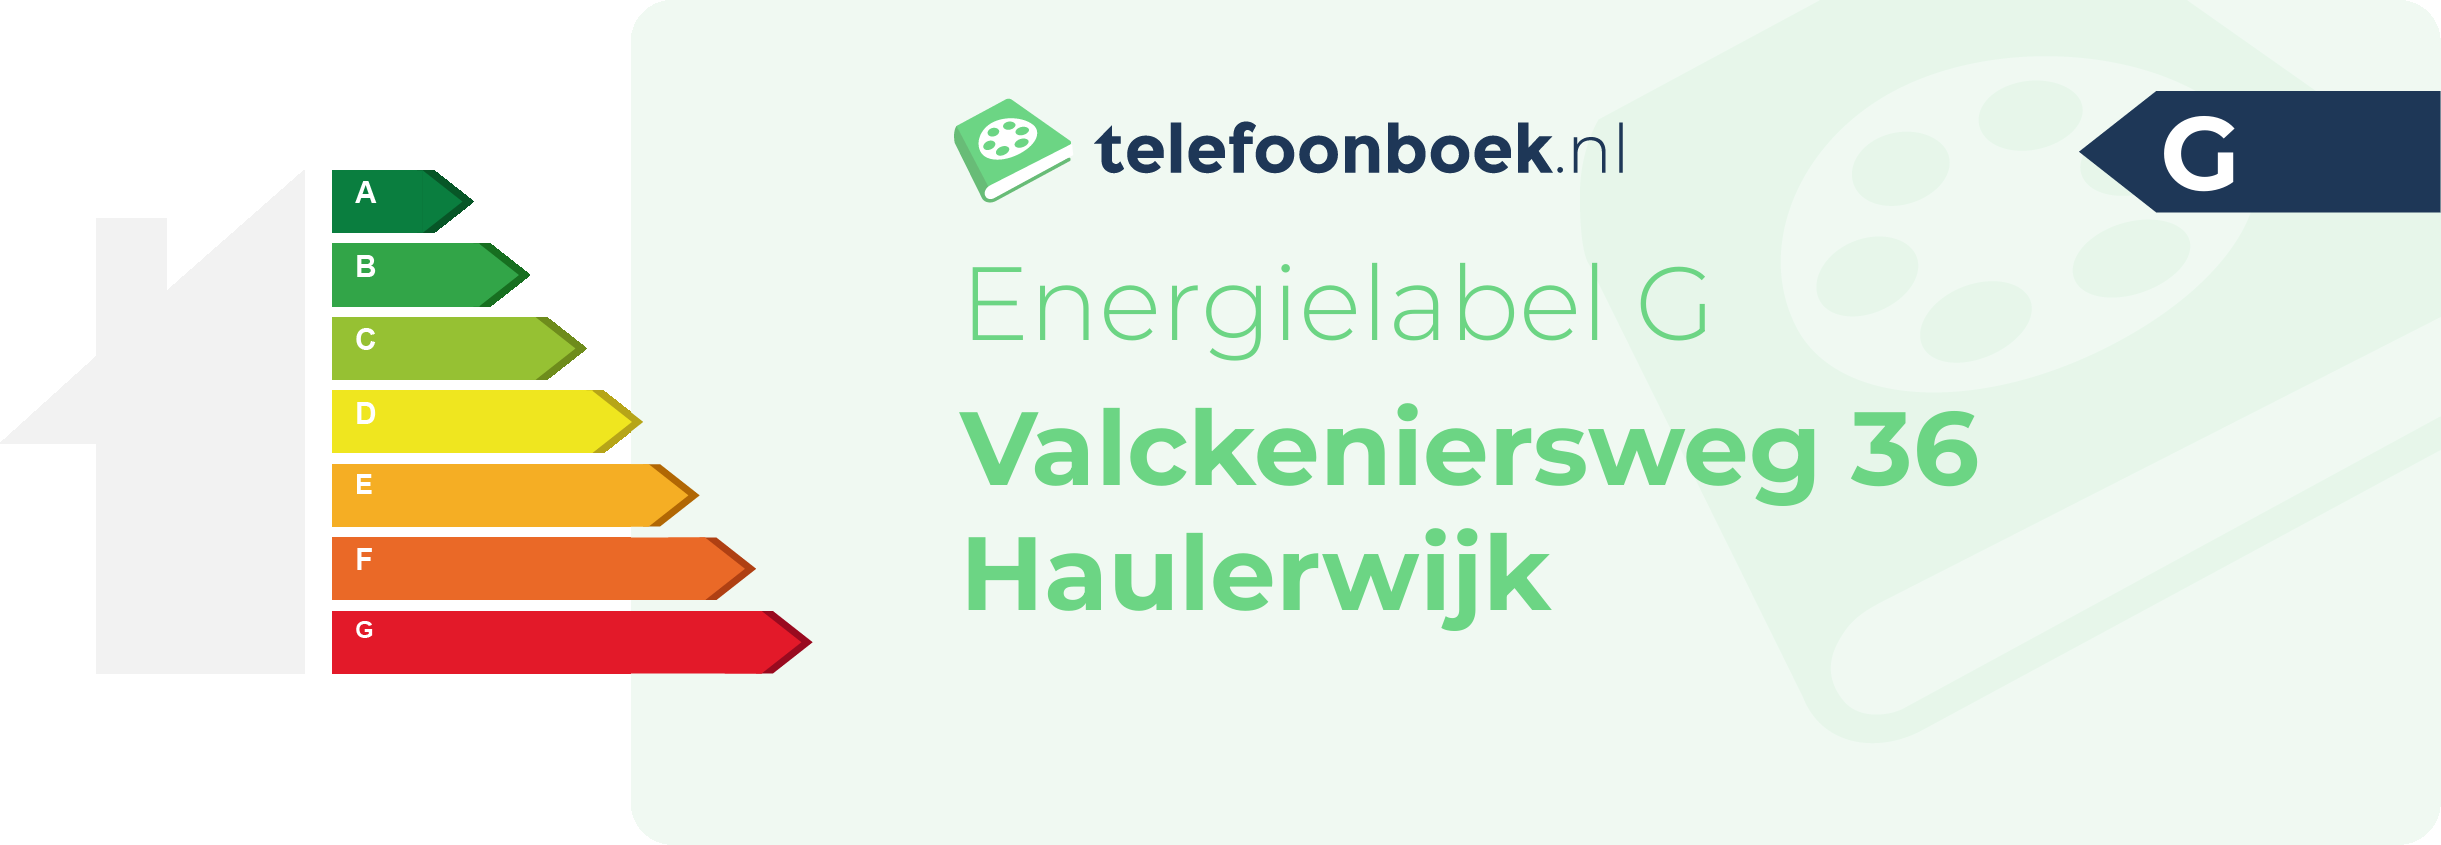 Energielabel Valckeniersweg 36 Haulerwijk